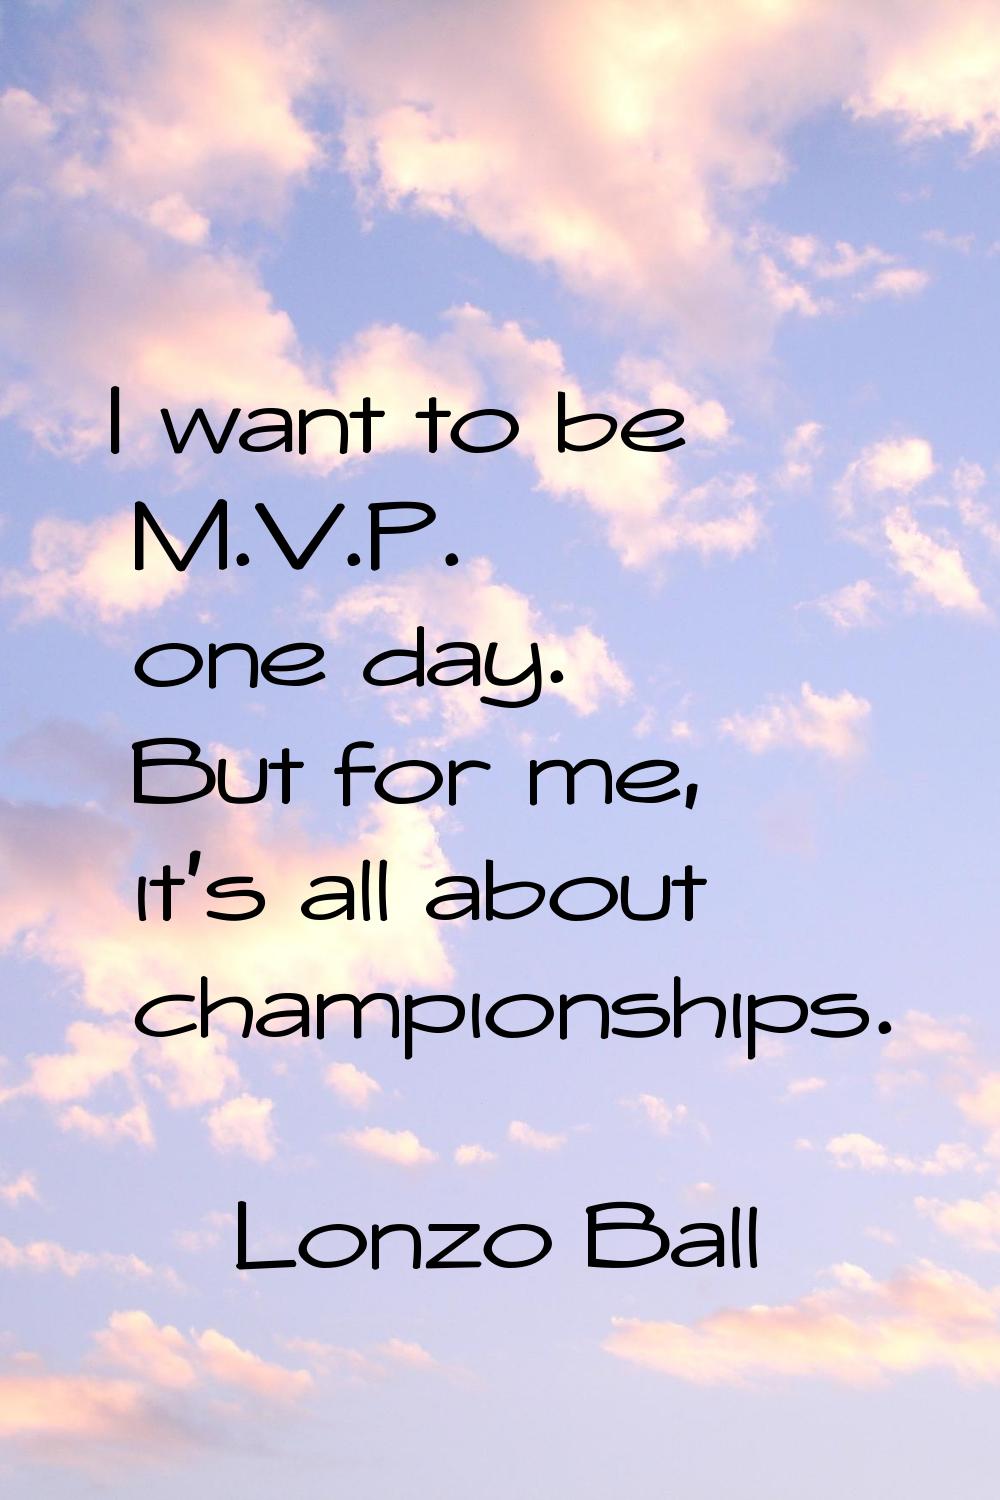 I want to be M.V.P. one day. But for me, it's all about championships.